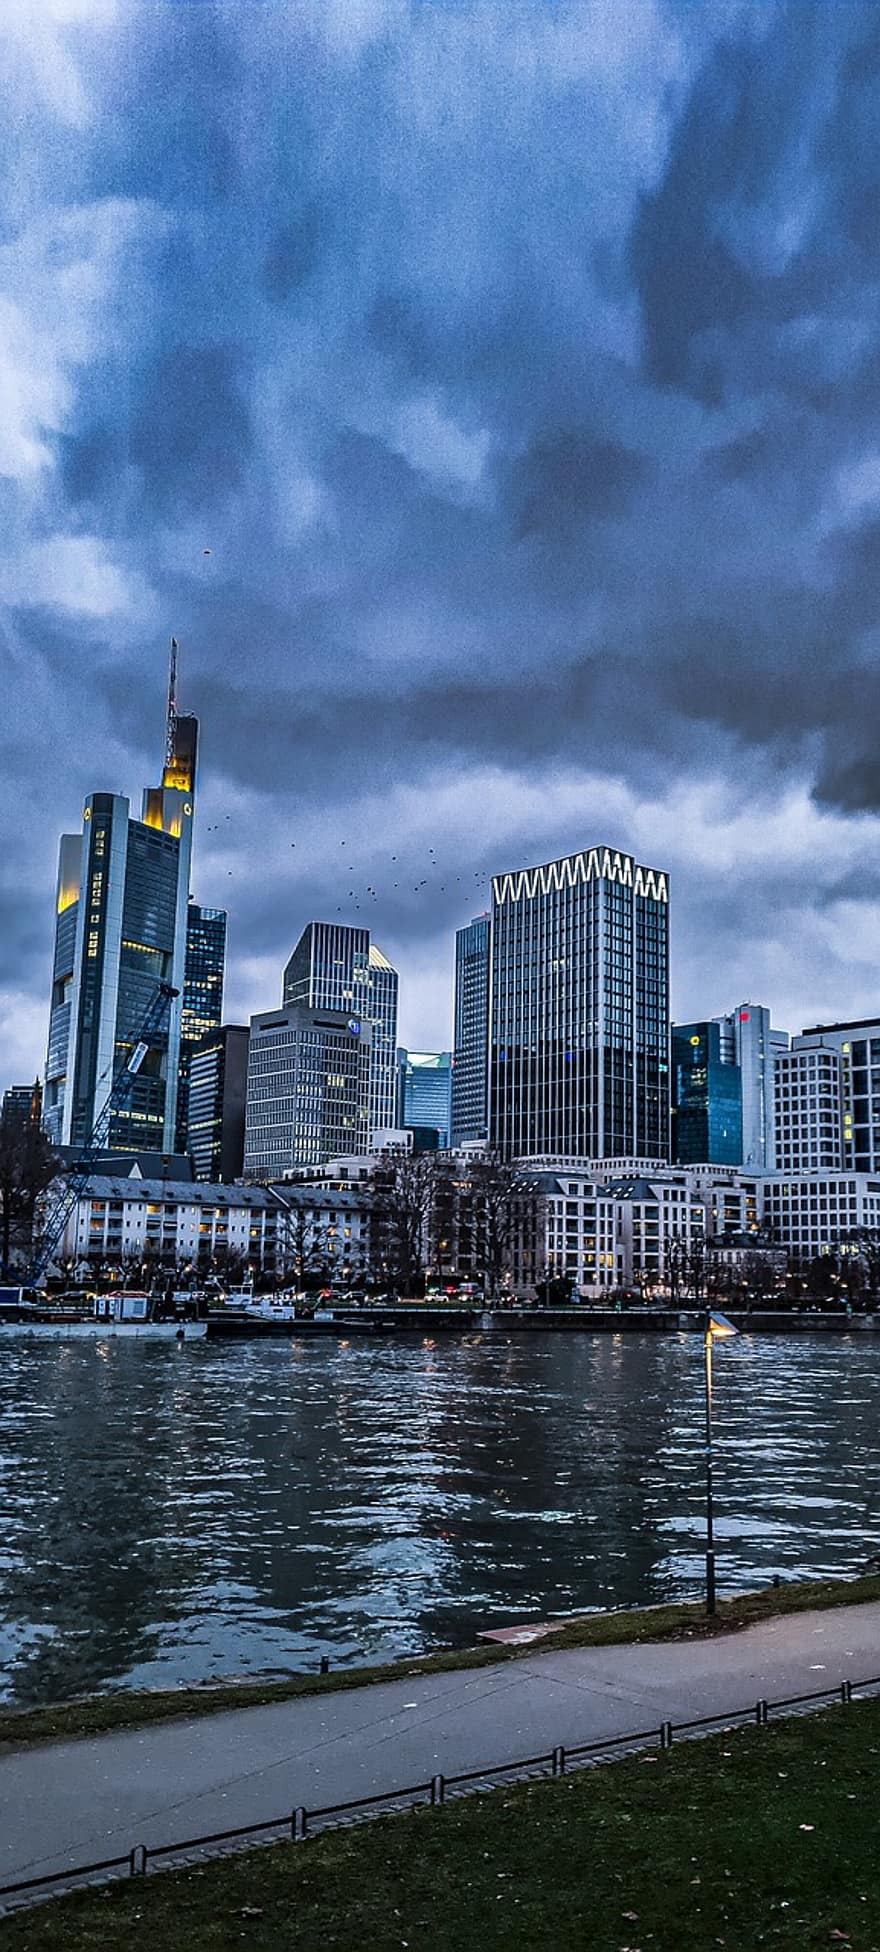 Stadt, Reise, Tourismus, Gebäude, Frankfurt, Horizont, Wolkenkratzer, Stadtbild, die Architektur, berühmter Platz, städtische Skyline